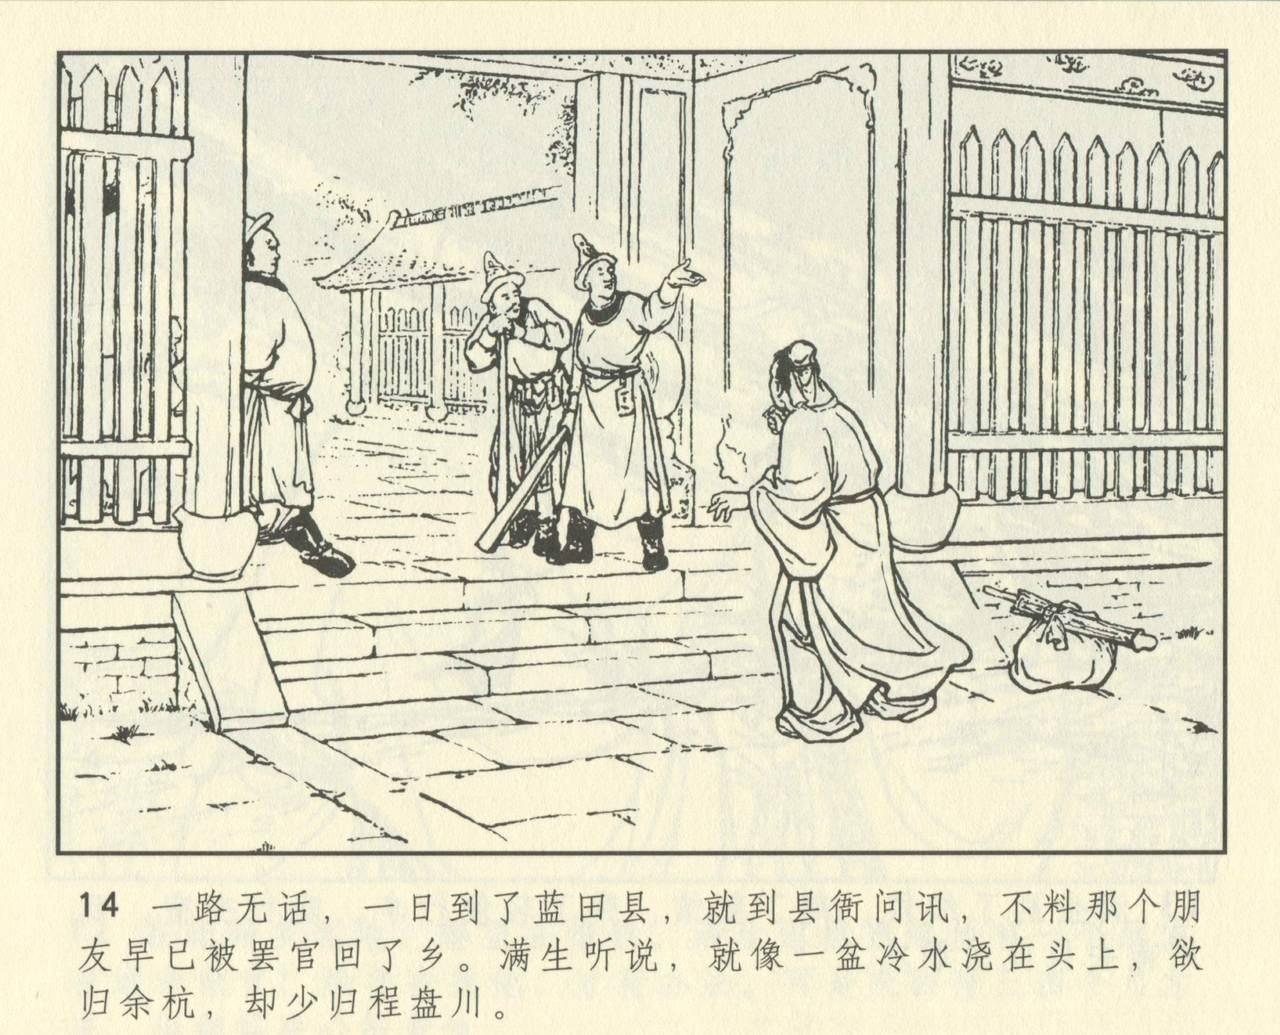 聊斋志异 张玮等绘 天津人民美术出版社 卷二十一 ~ 三十 425